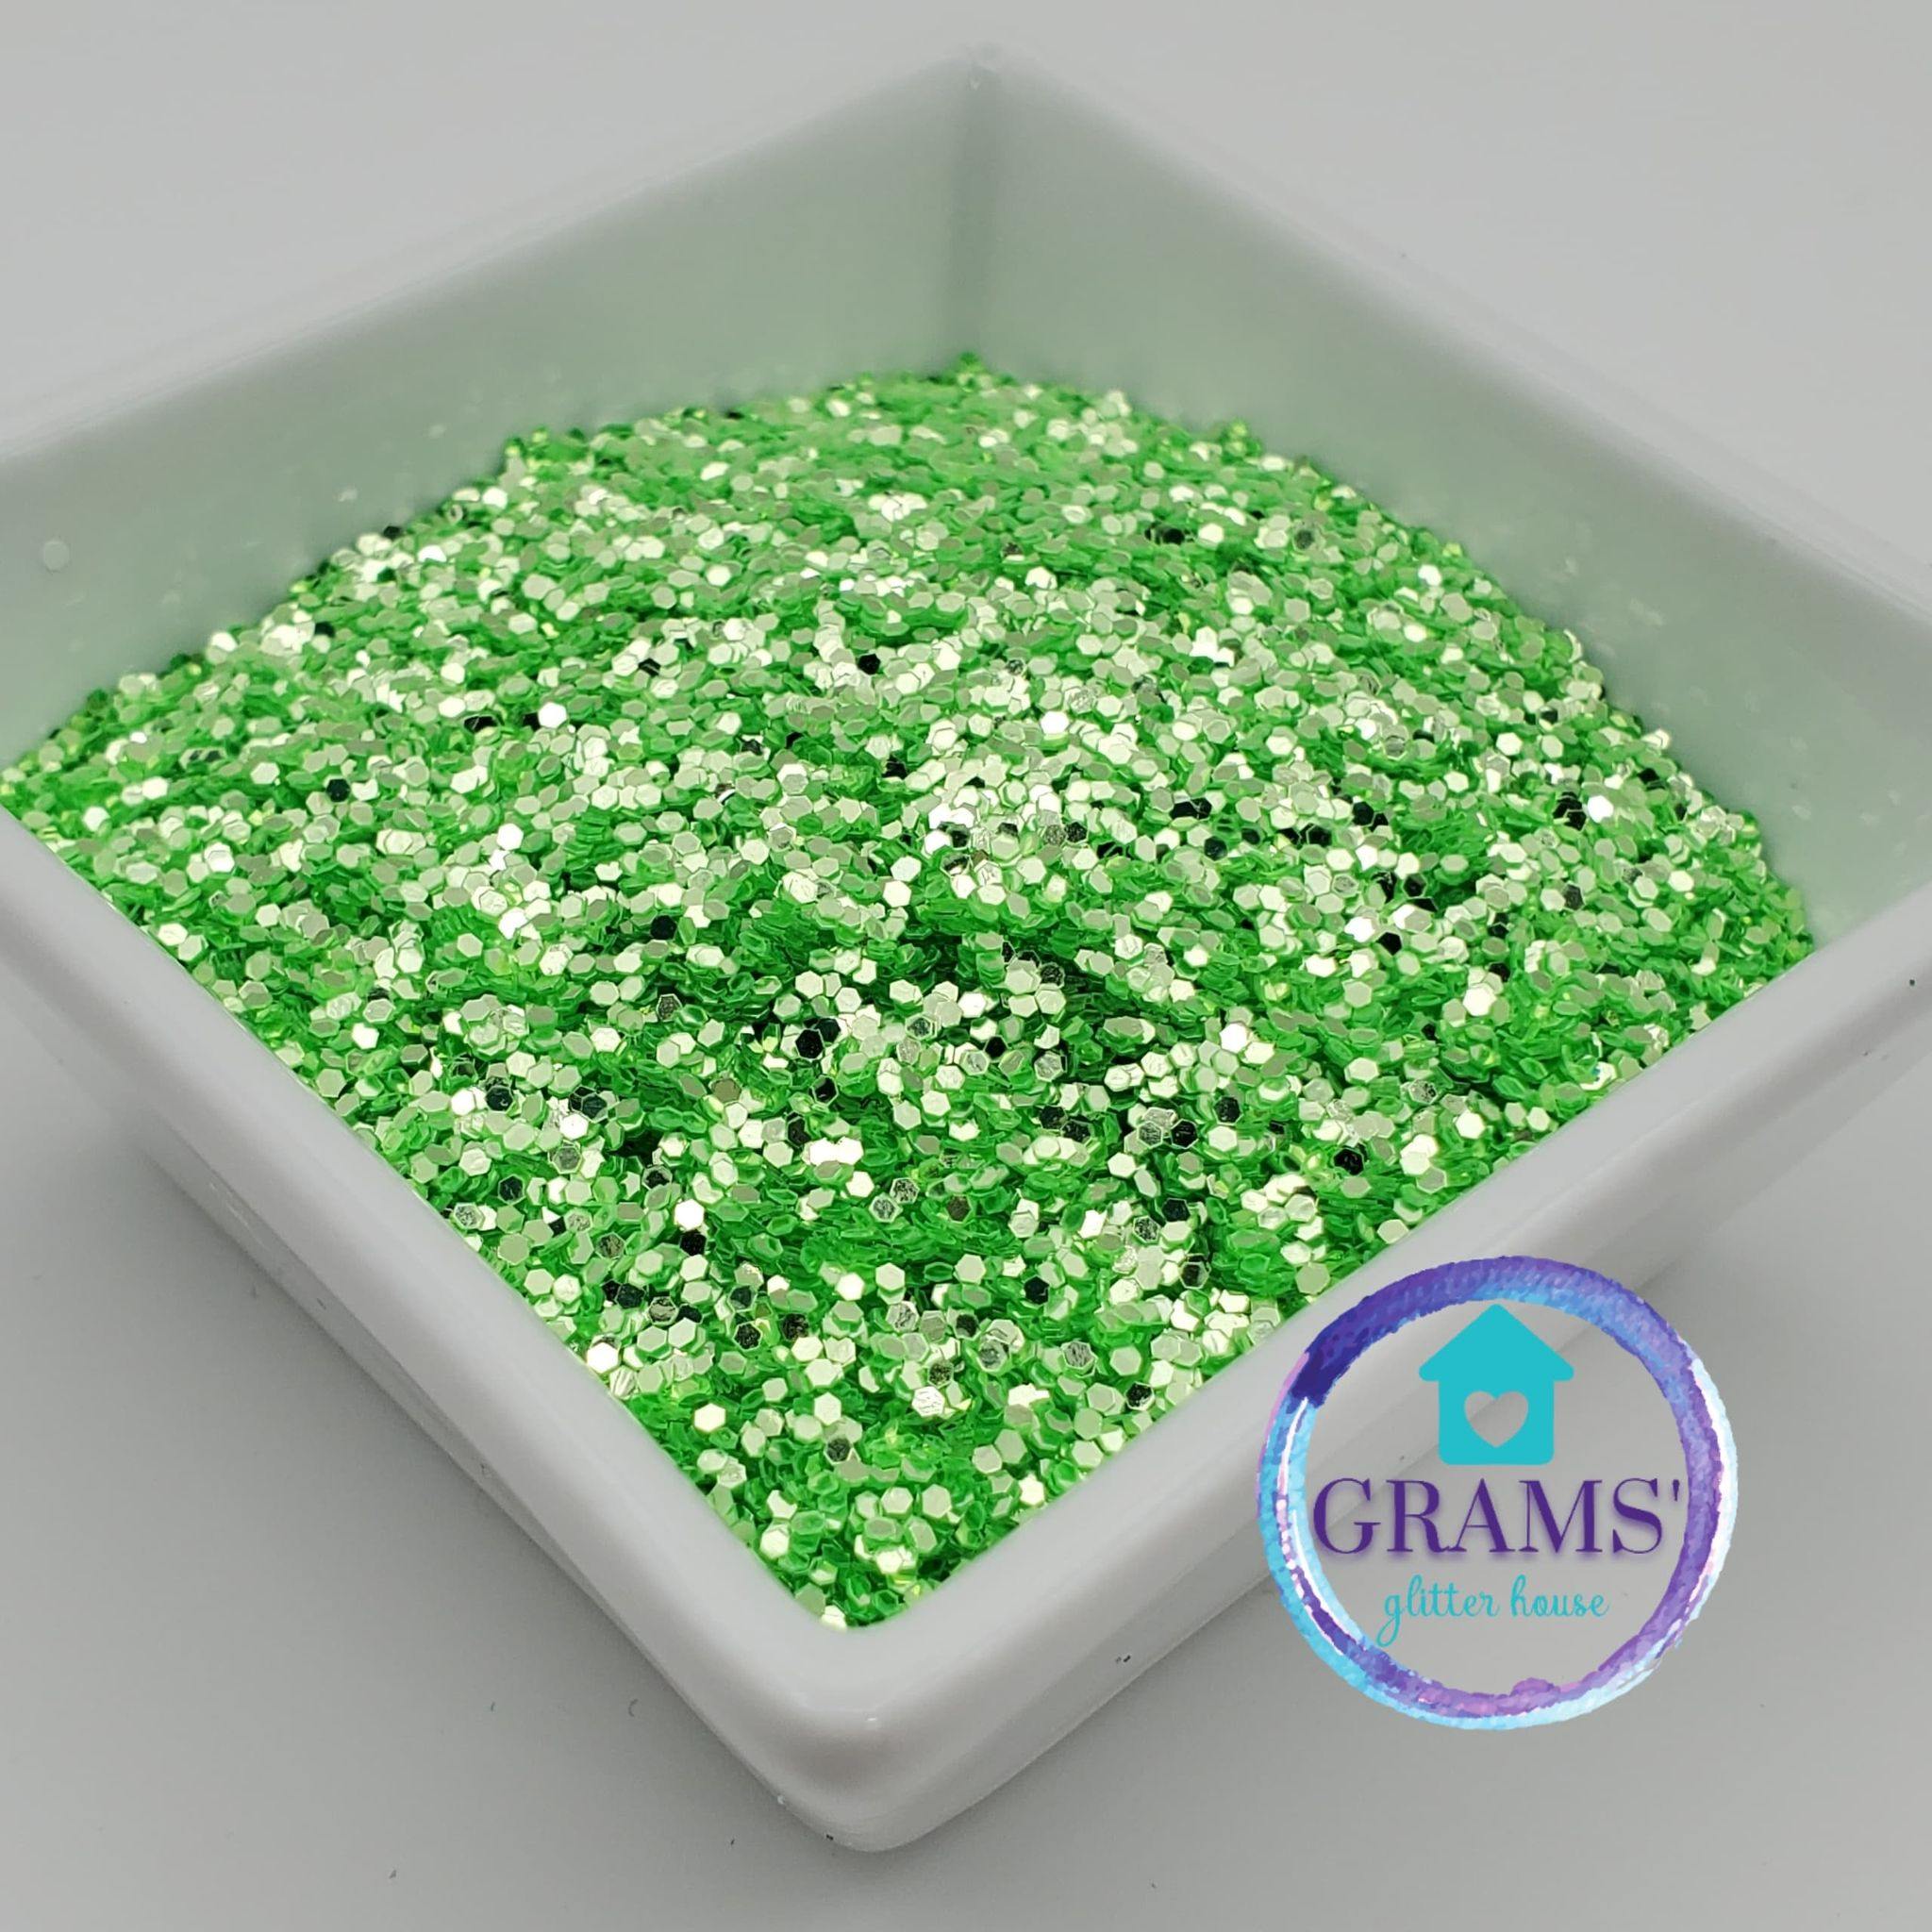 Grams' Glitter House Margarite Lime polyester glitter